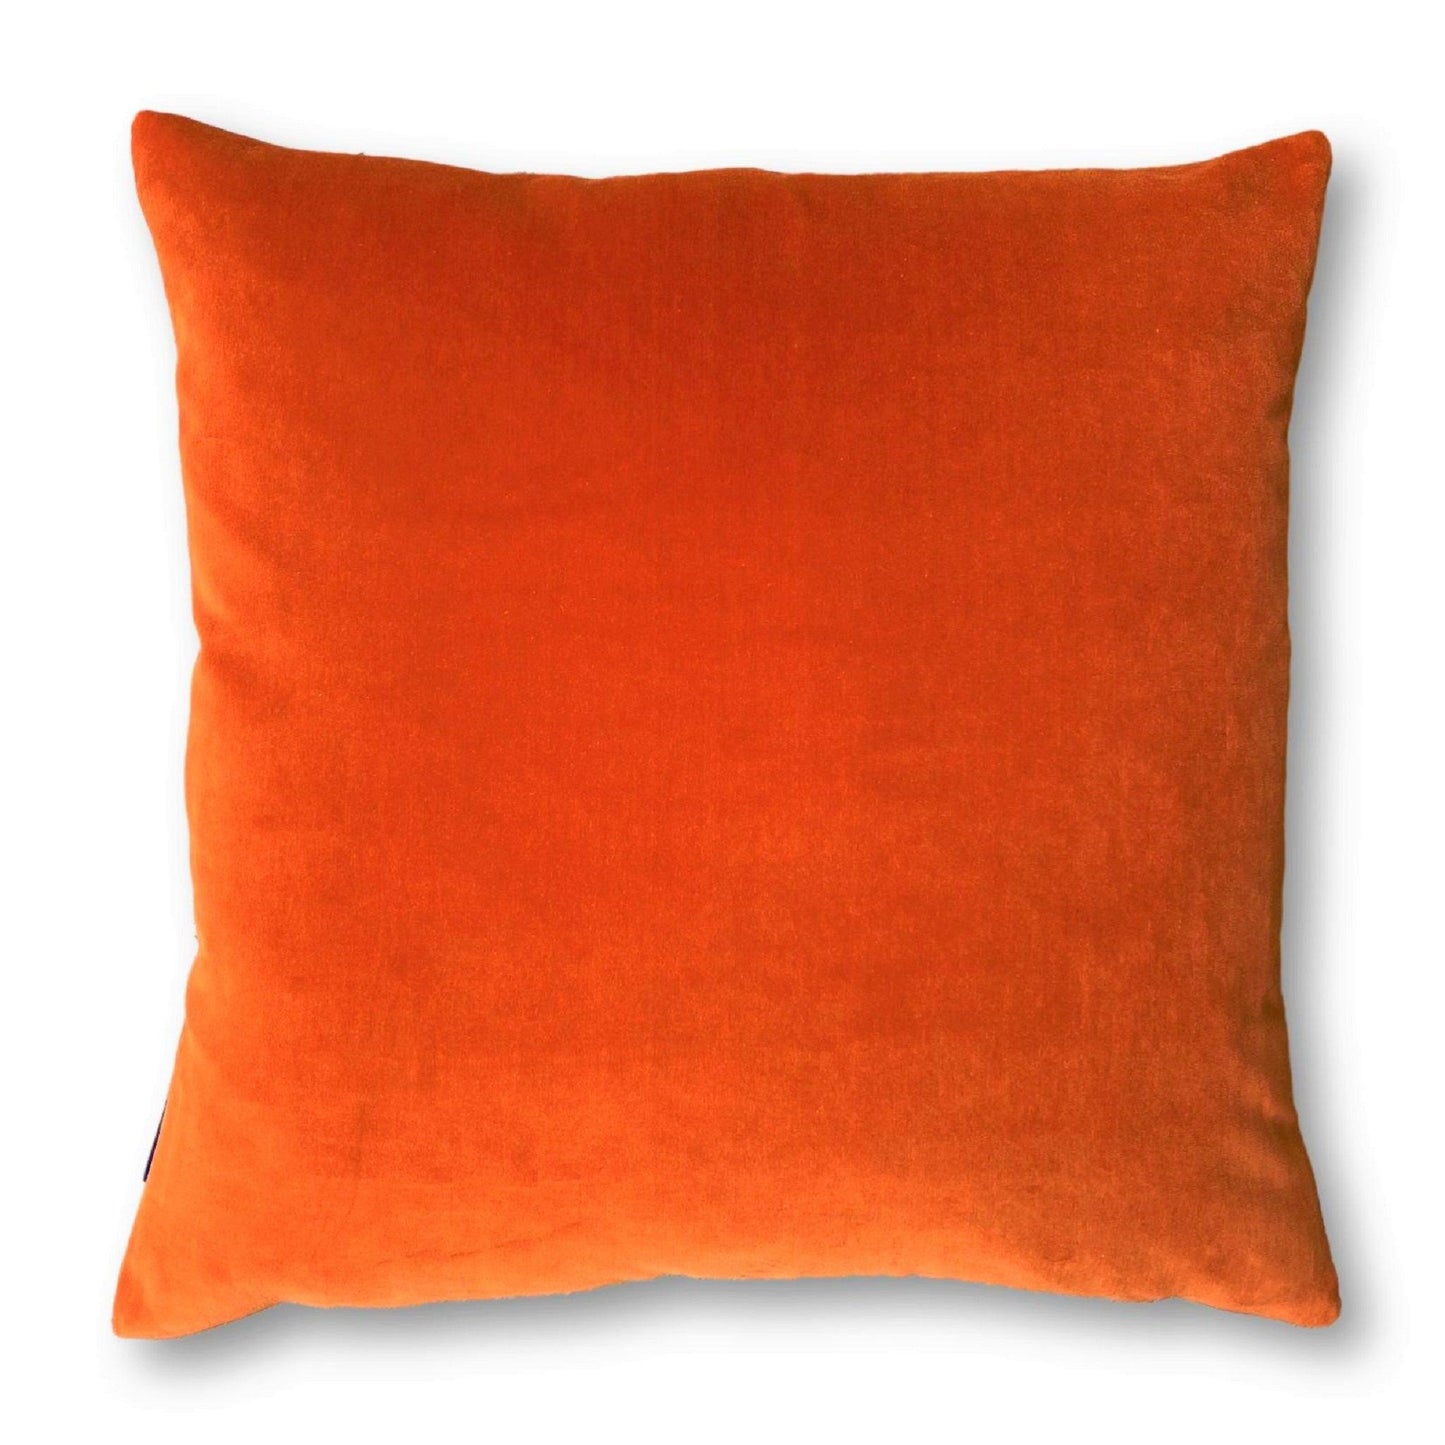 Burnt Orange Velvet Cushion with Emerald Green